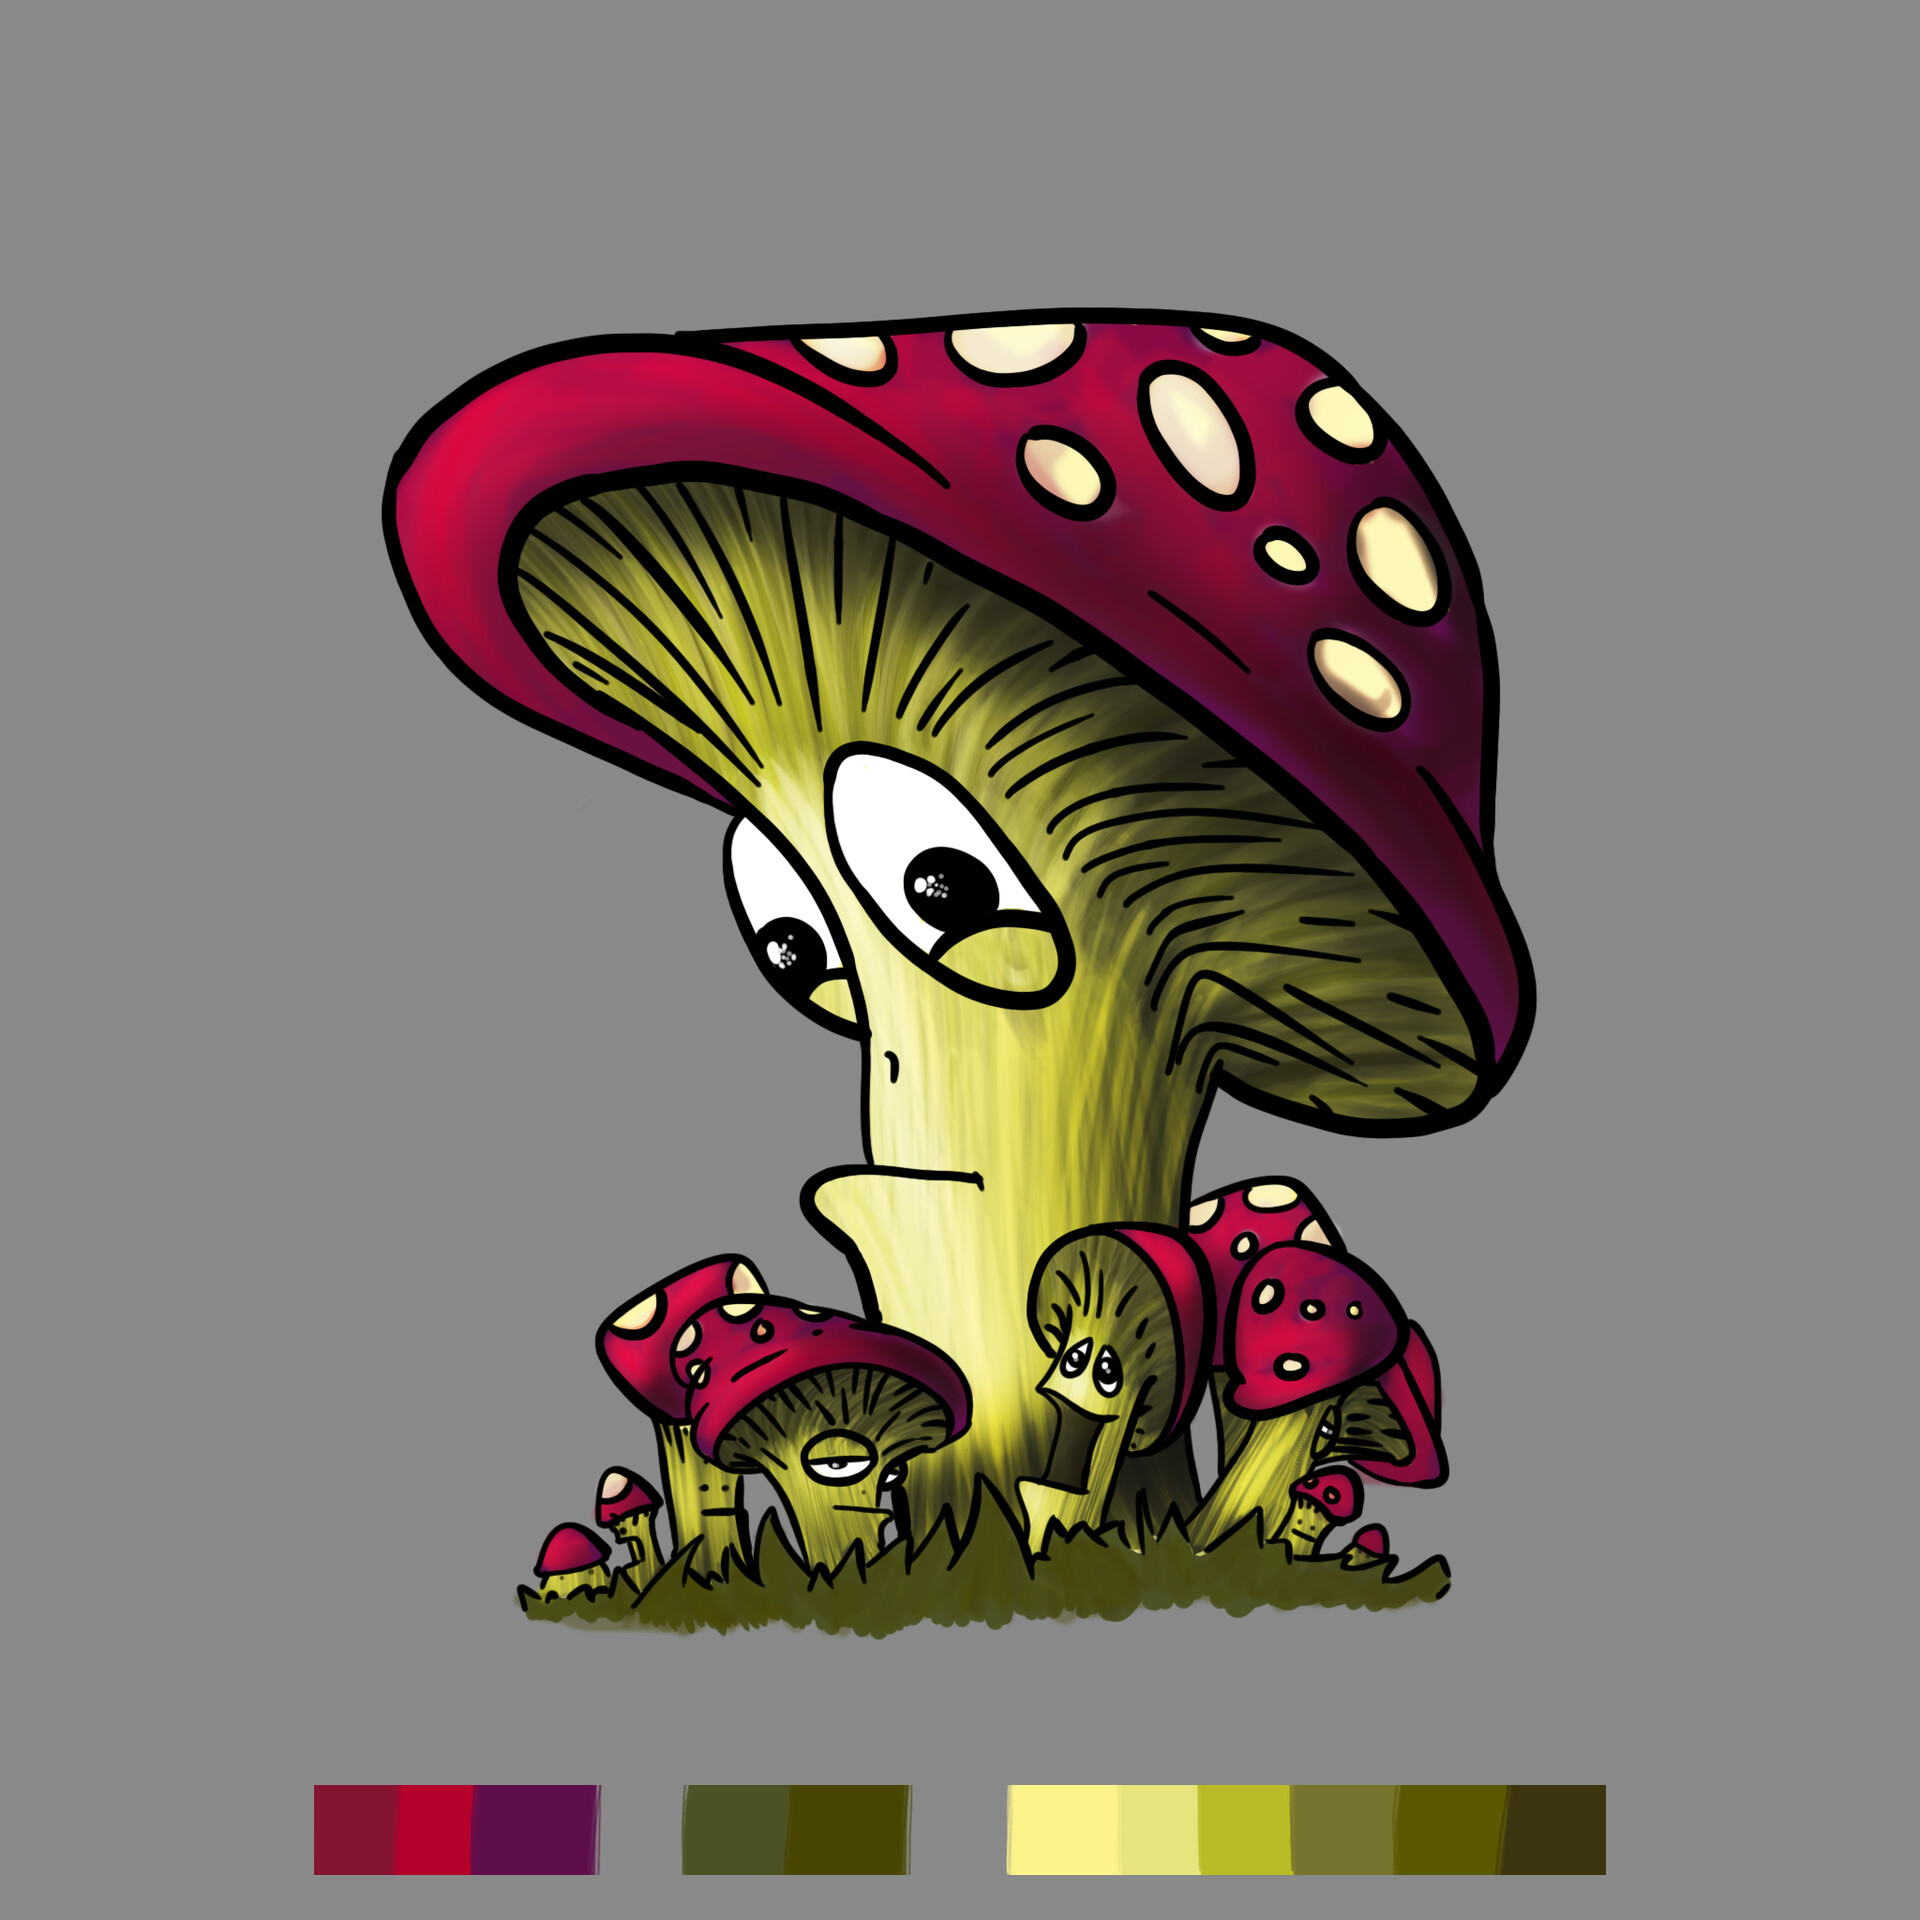 ArtStation - Swamp Cartoon Mushroom